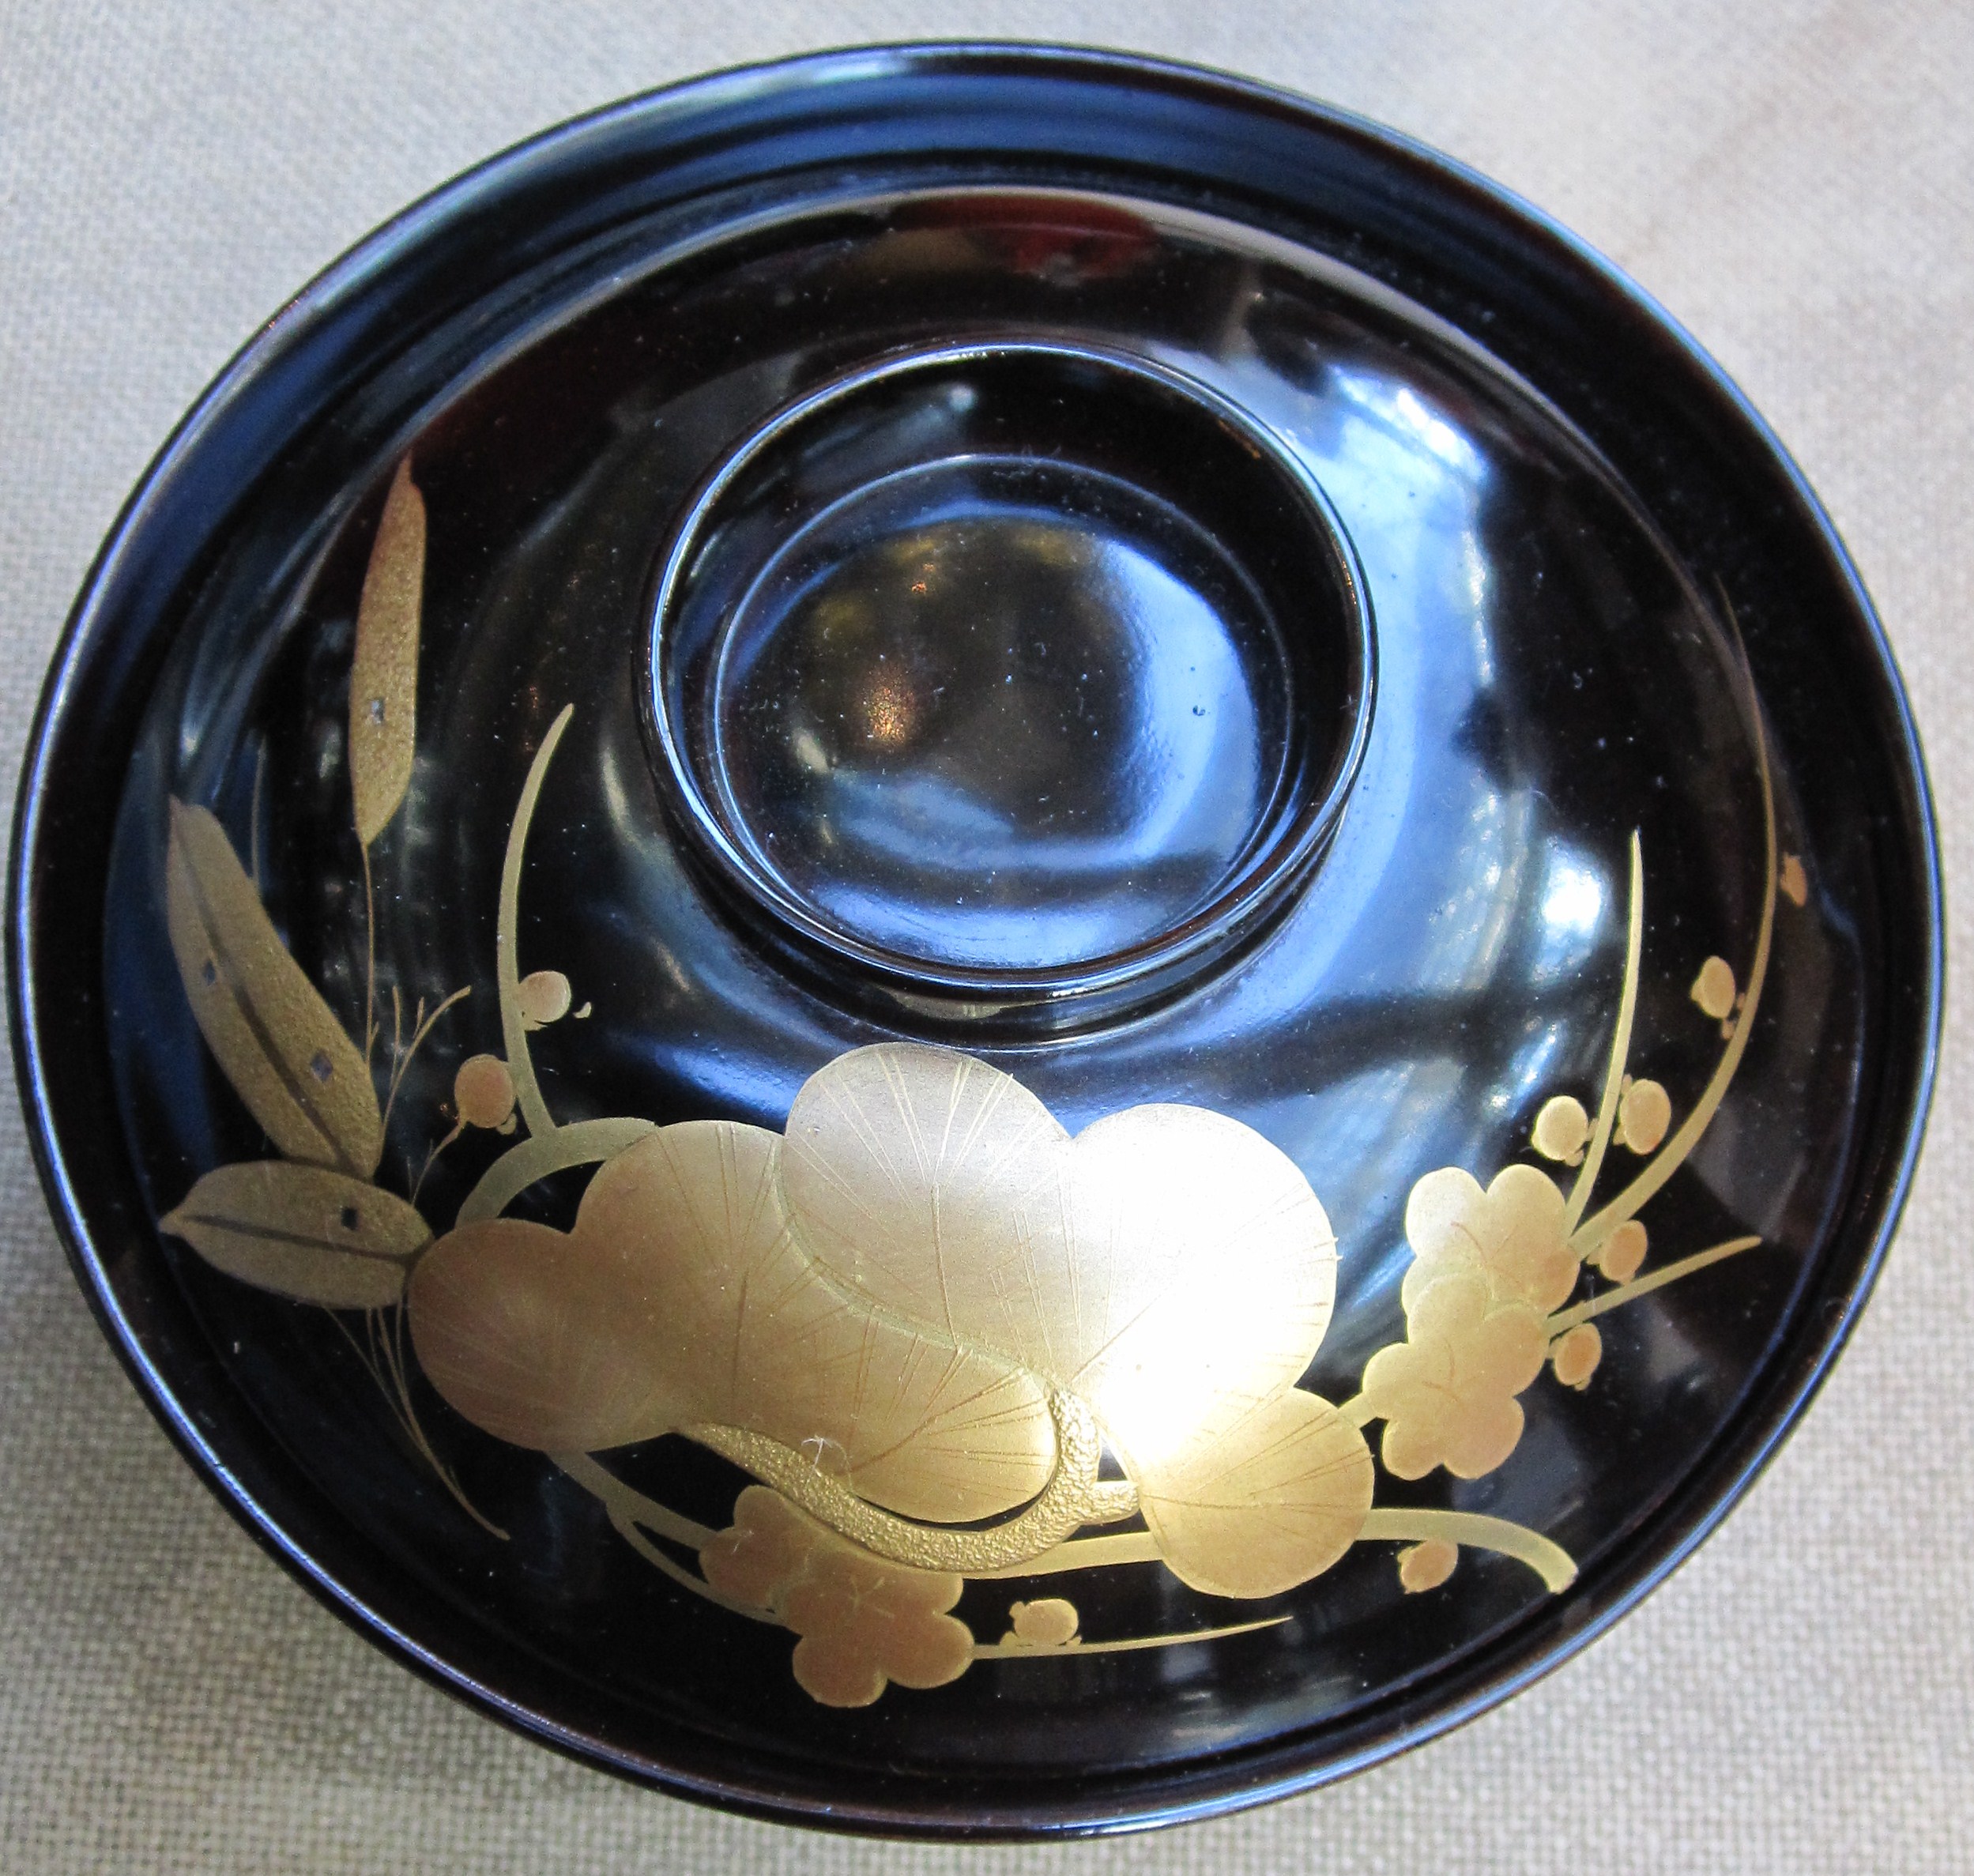 Sho Chiku Bai lacquer bowl